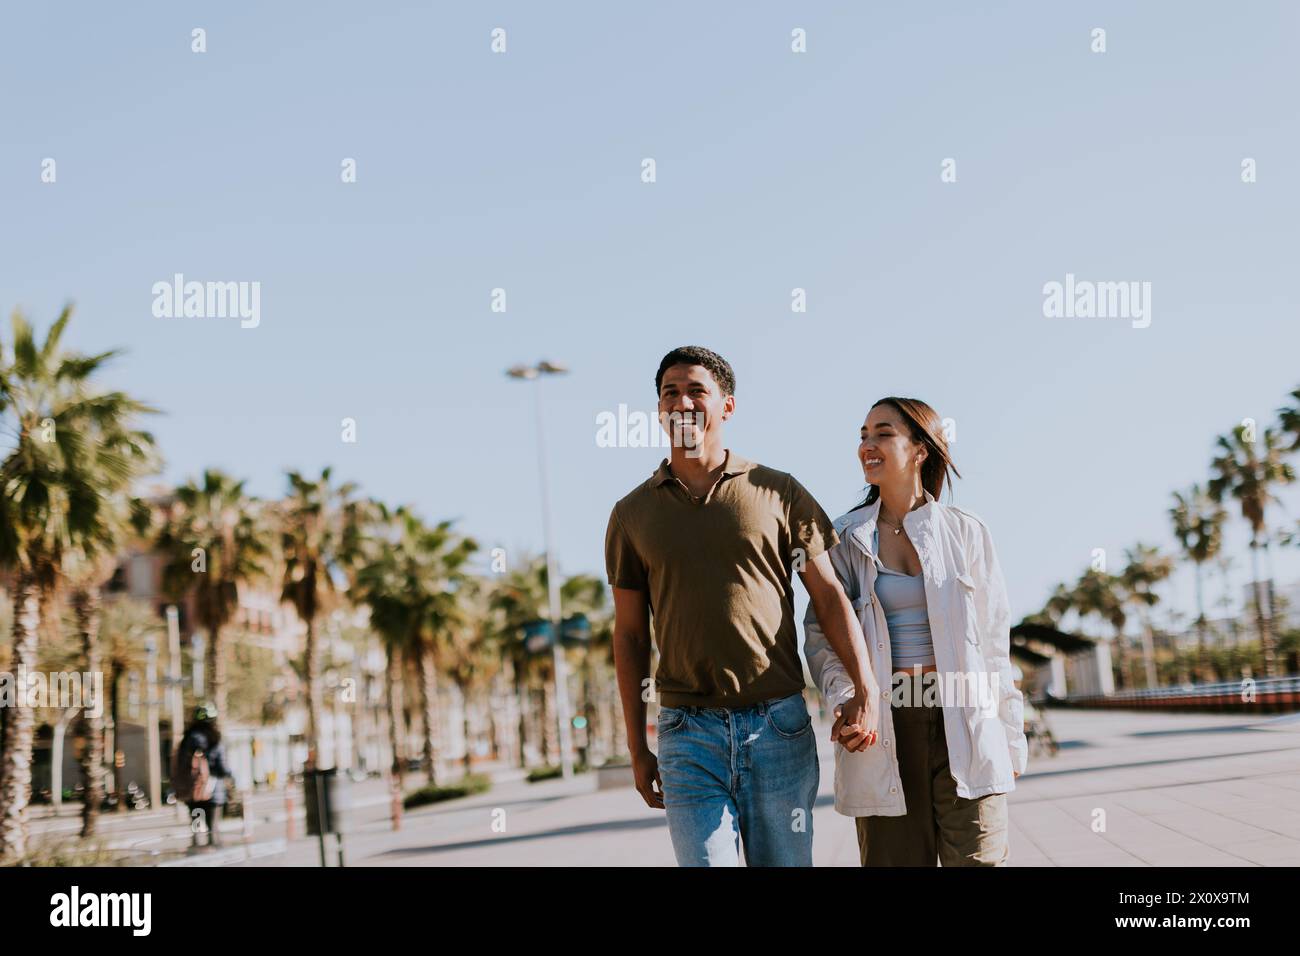 Das junge Paar hält Hände und lächelt, während es einen sonnigen Pfad in Barcelona entlang geht, der von Palmen eingerahmt wird Stockfoto